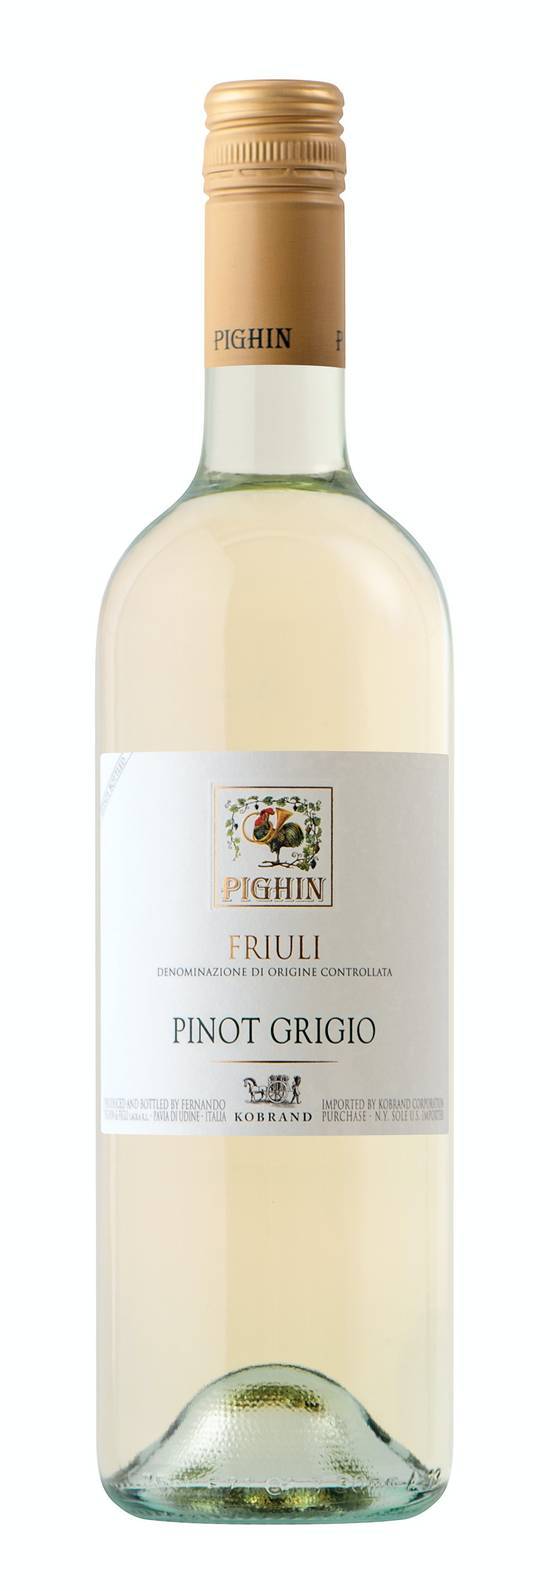 Pighin Pinot Grigio Friuli 2008 (750 ml)